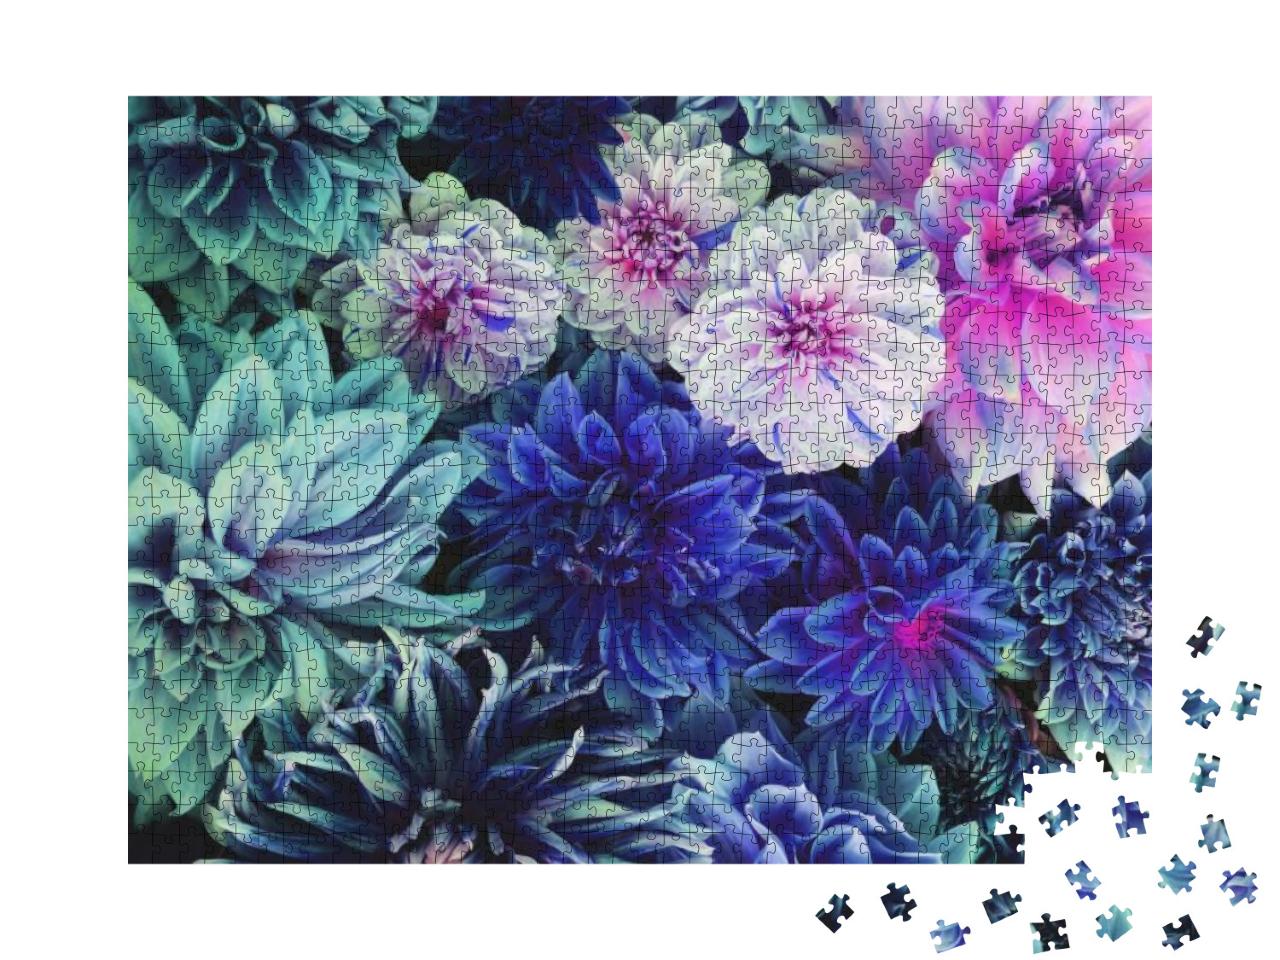 Puzzle 1000 Teile „Weiße und lila Dahlienblüten in voller Blüte“